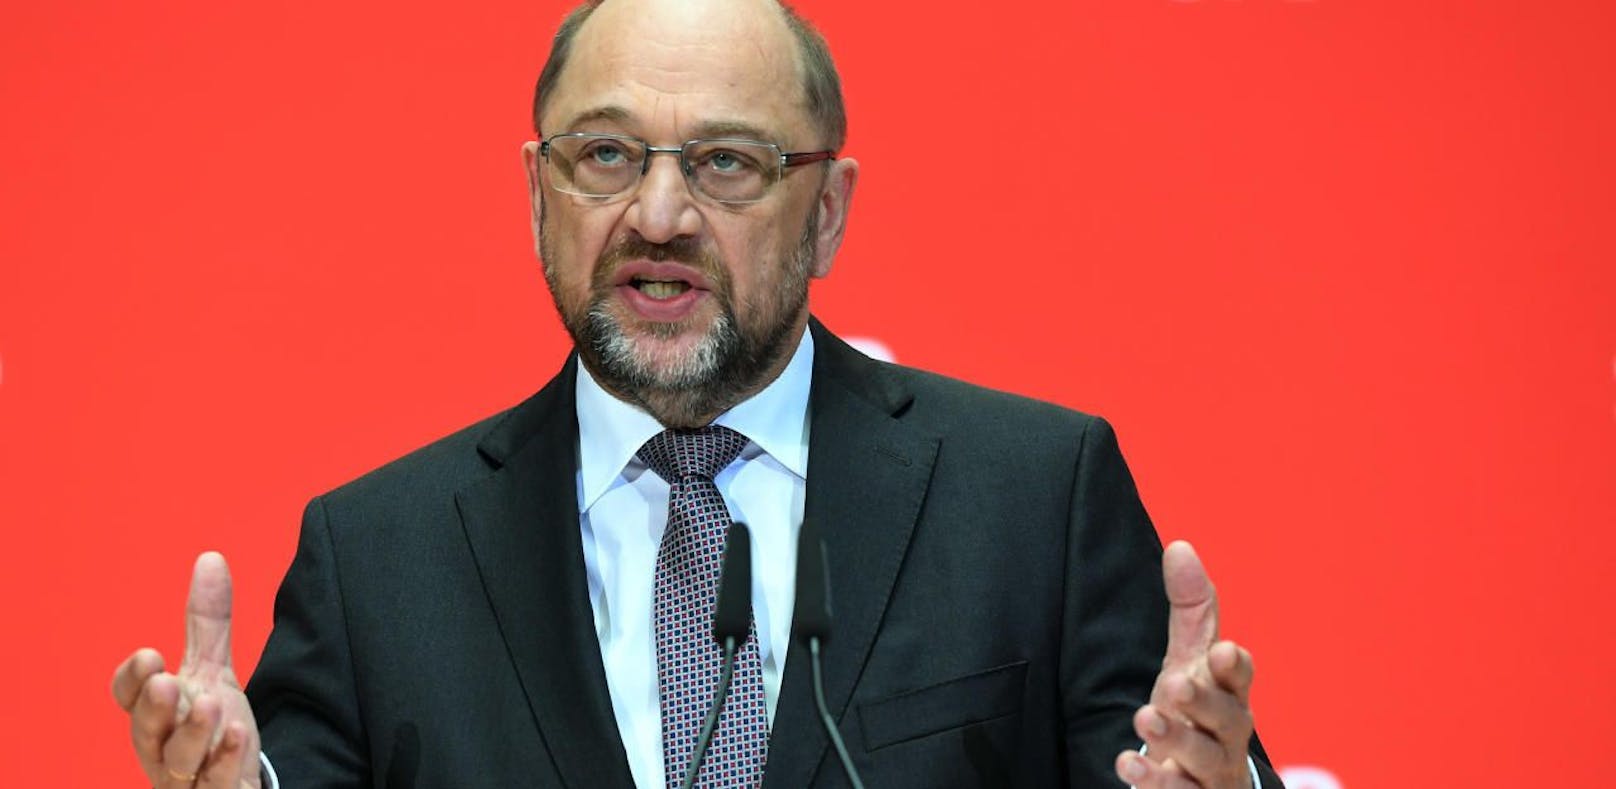 SPD-Chef Martin Schulz